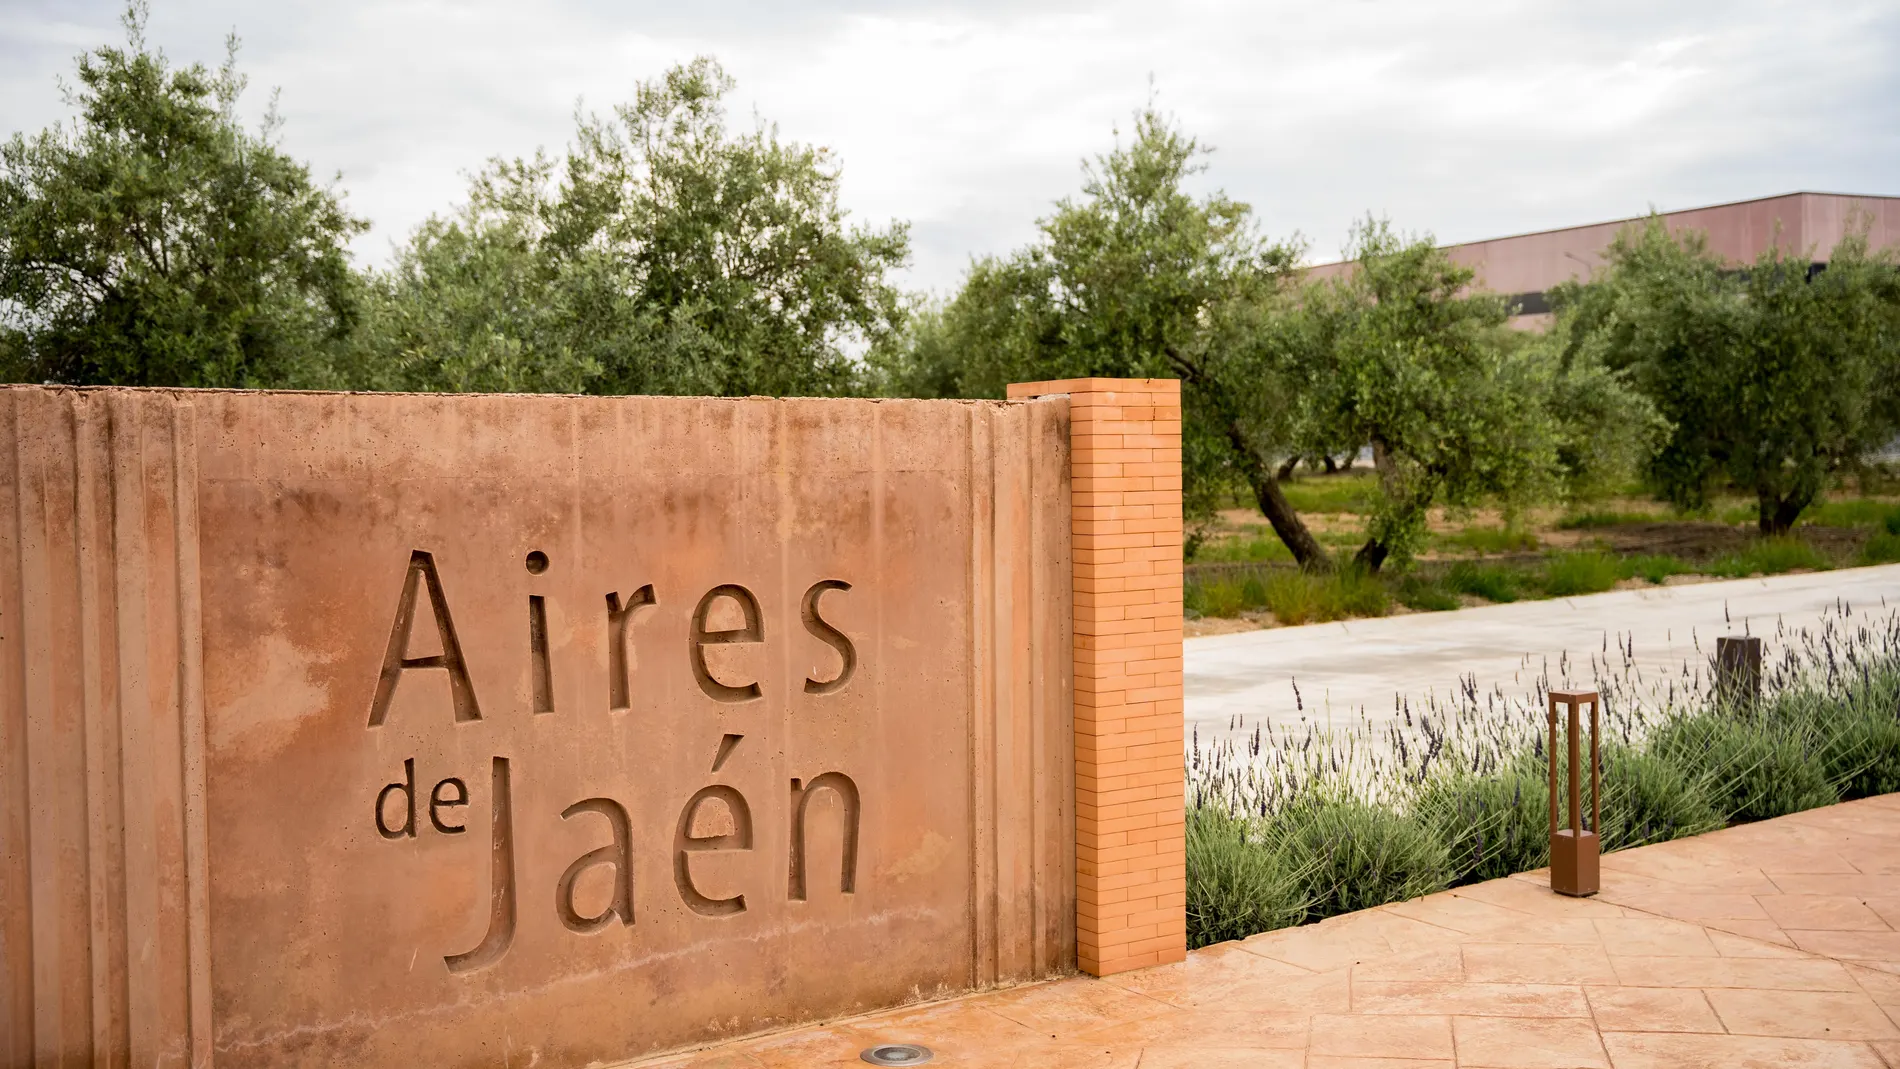 Aires de Jaén se ha convertido en una compañía que promueve el desarrollo local con la mirada puesta en el mundo.